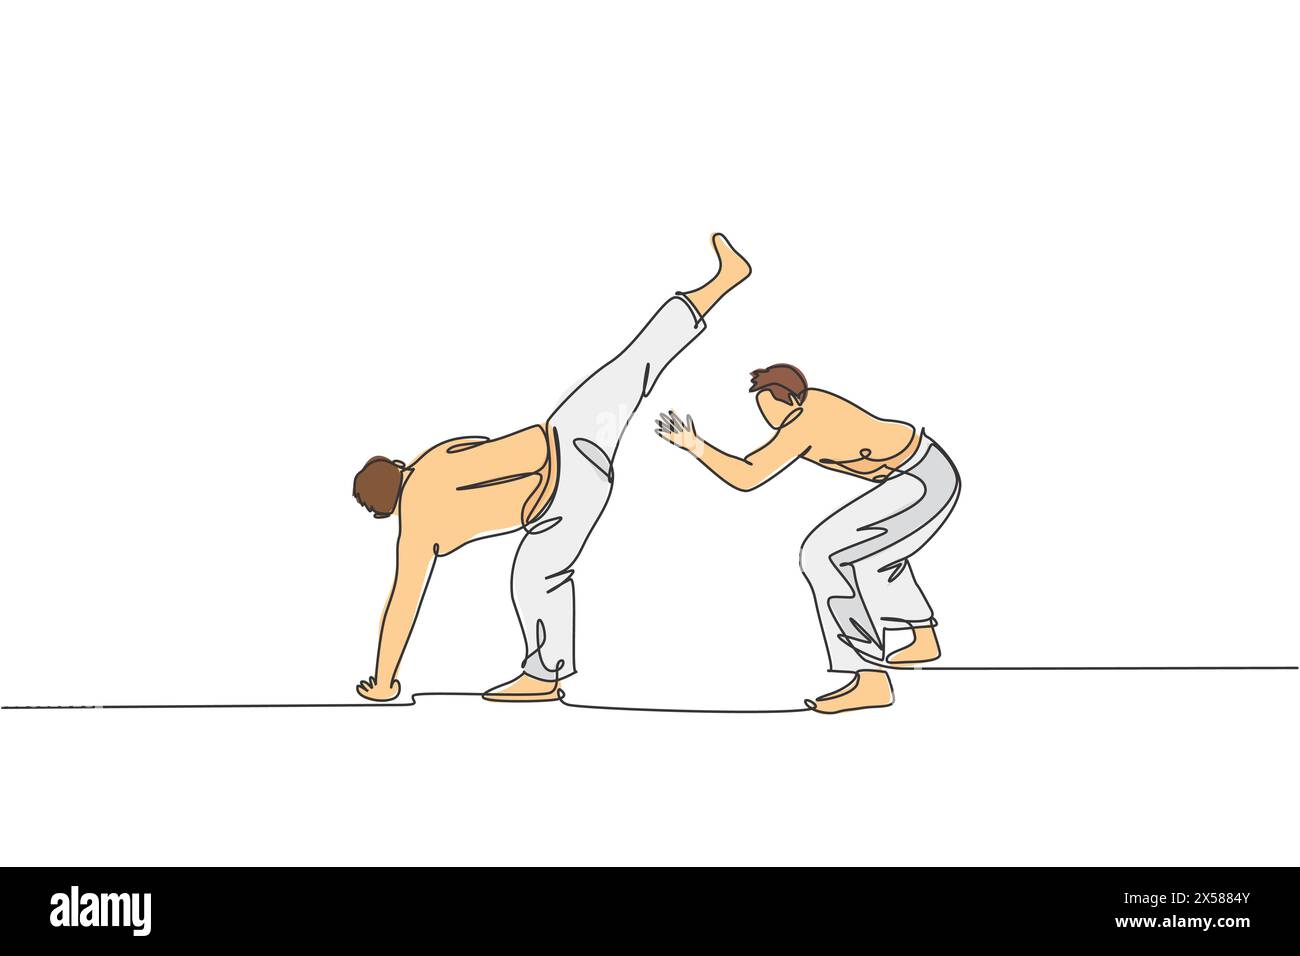 Un dessin au trait continu de deux jeunes combattants brésiliens sportifs entraînant la capoeira sur la plage. Concept de sport de combat traditionnel sain. Dyna Illustration de Vecteur